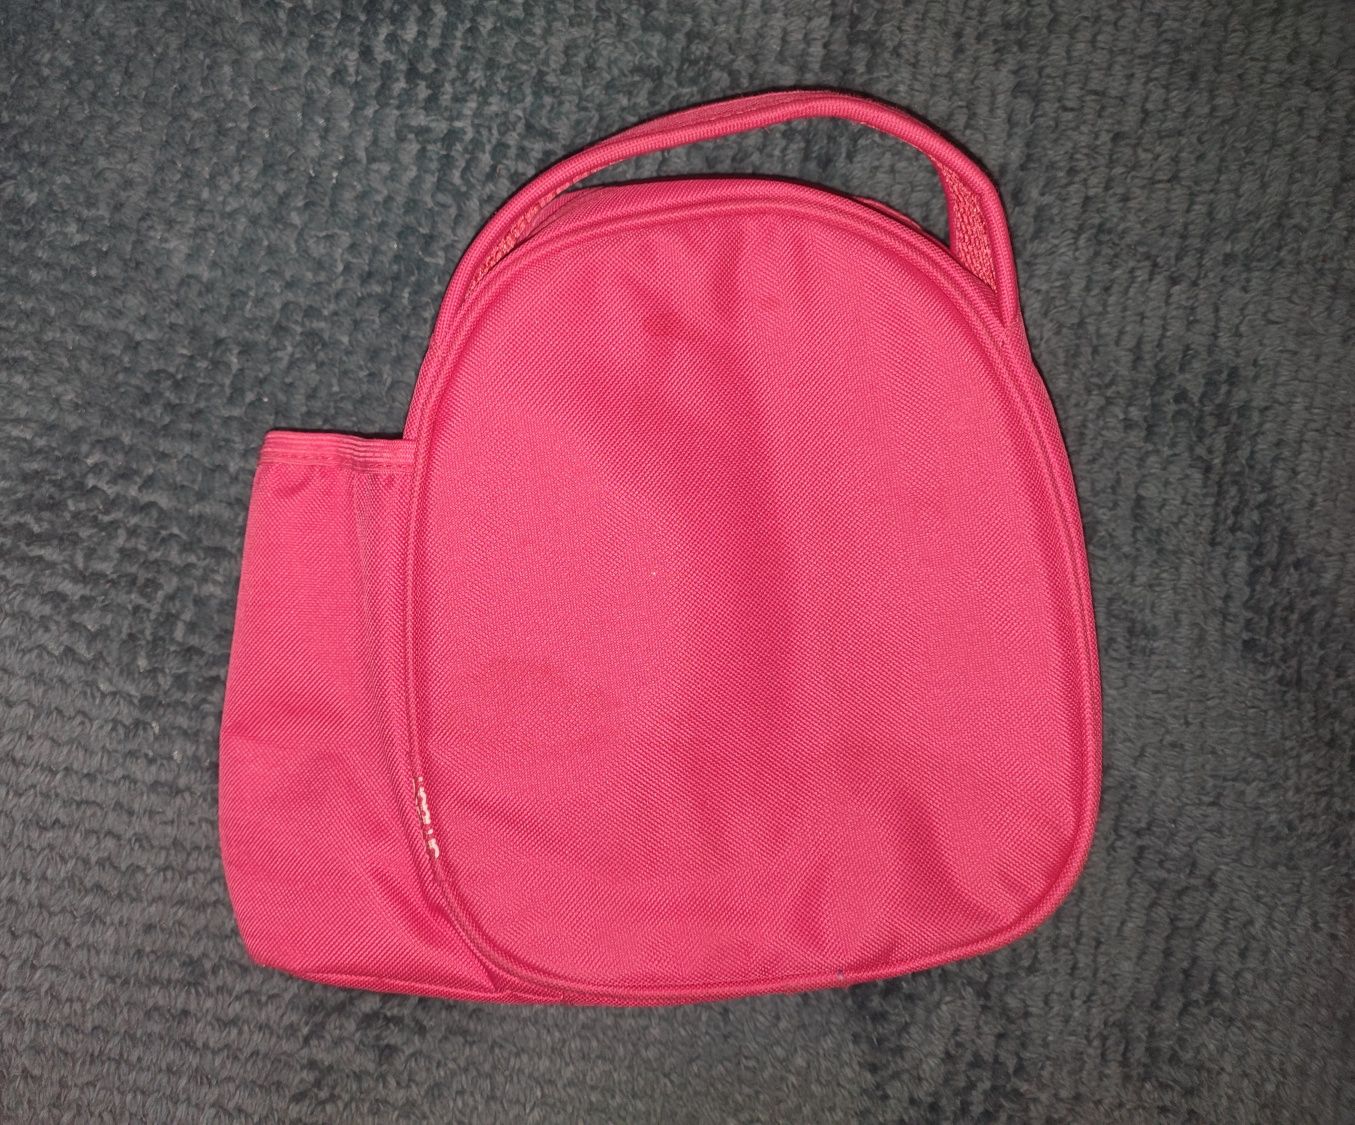 Smash blue IQ - Lunch Bag, torba do przechowywania jedzenia